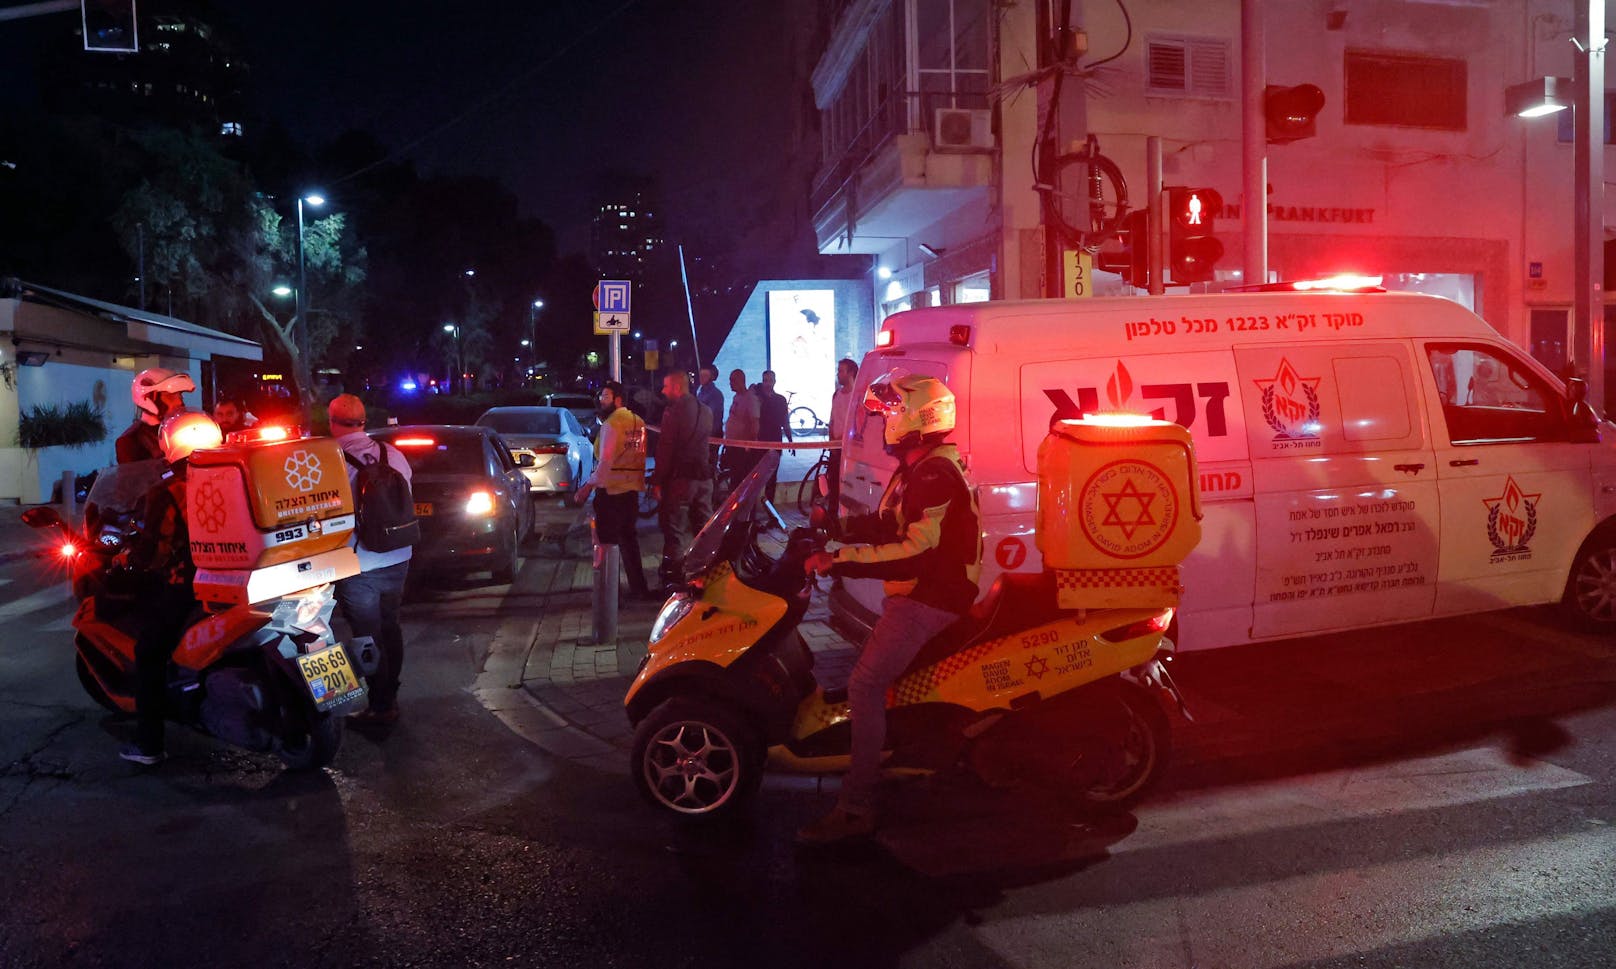 Schüsse in Tel Aviv – mindestens 2 Menschen tot